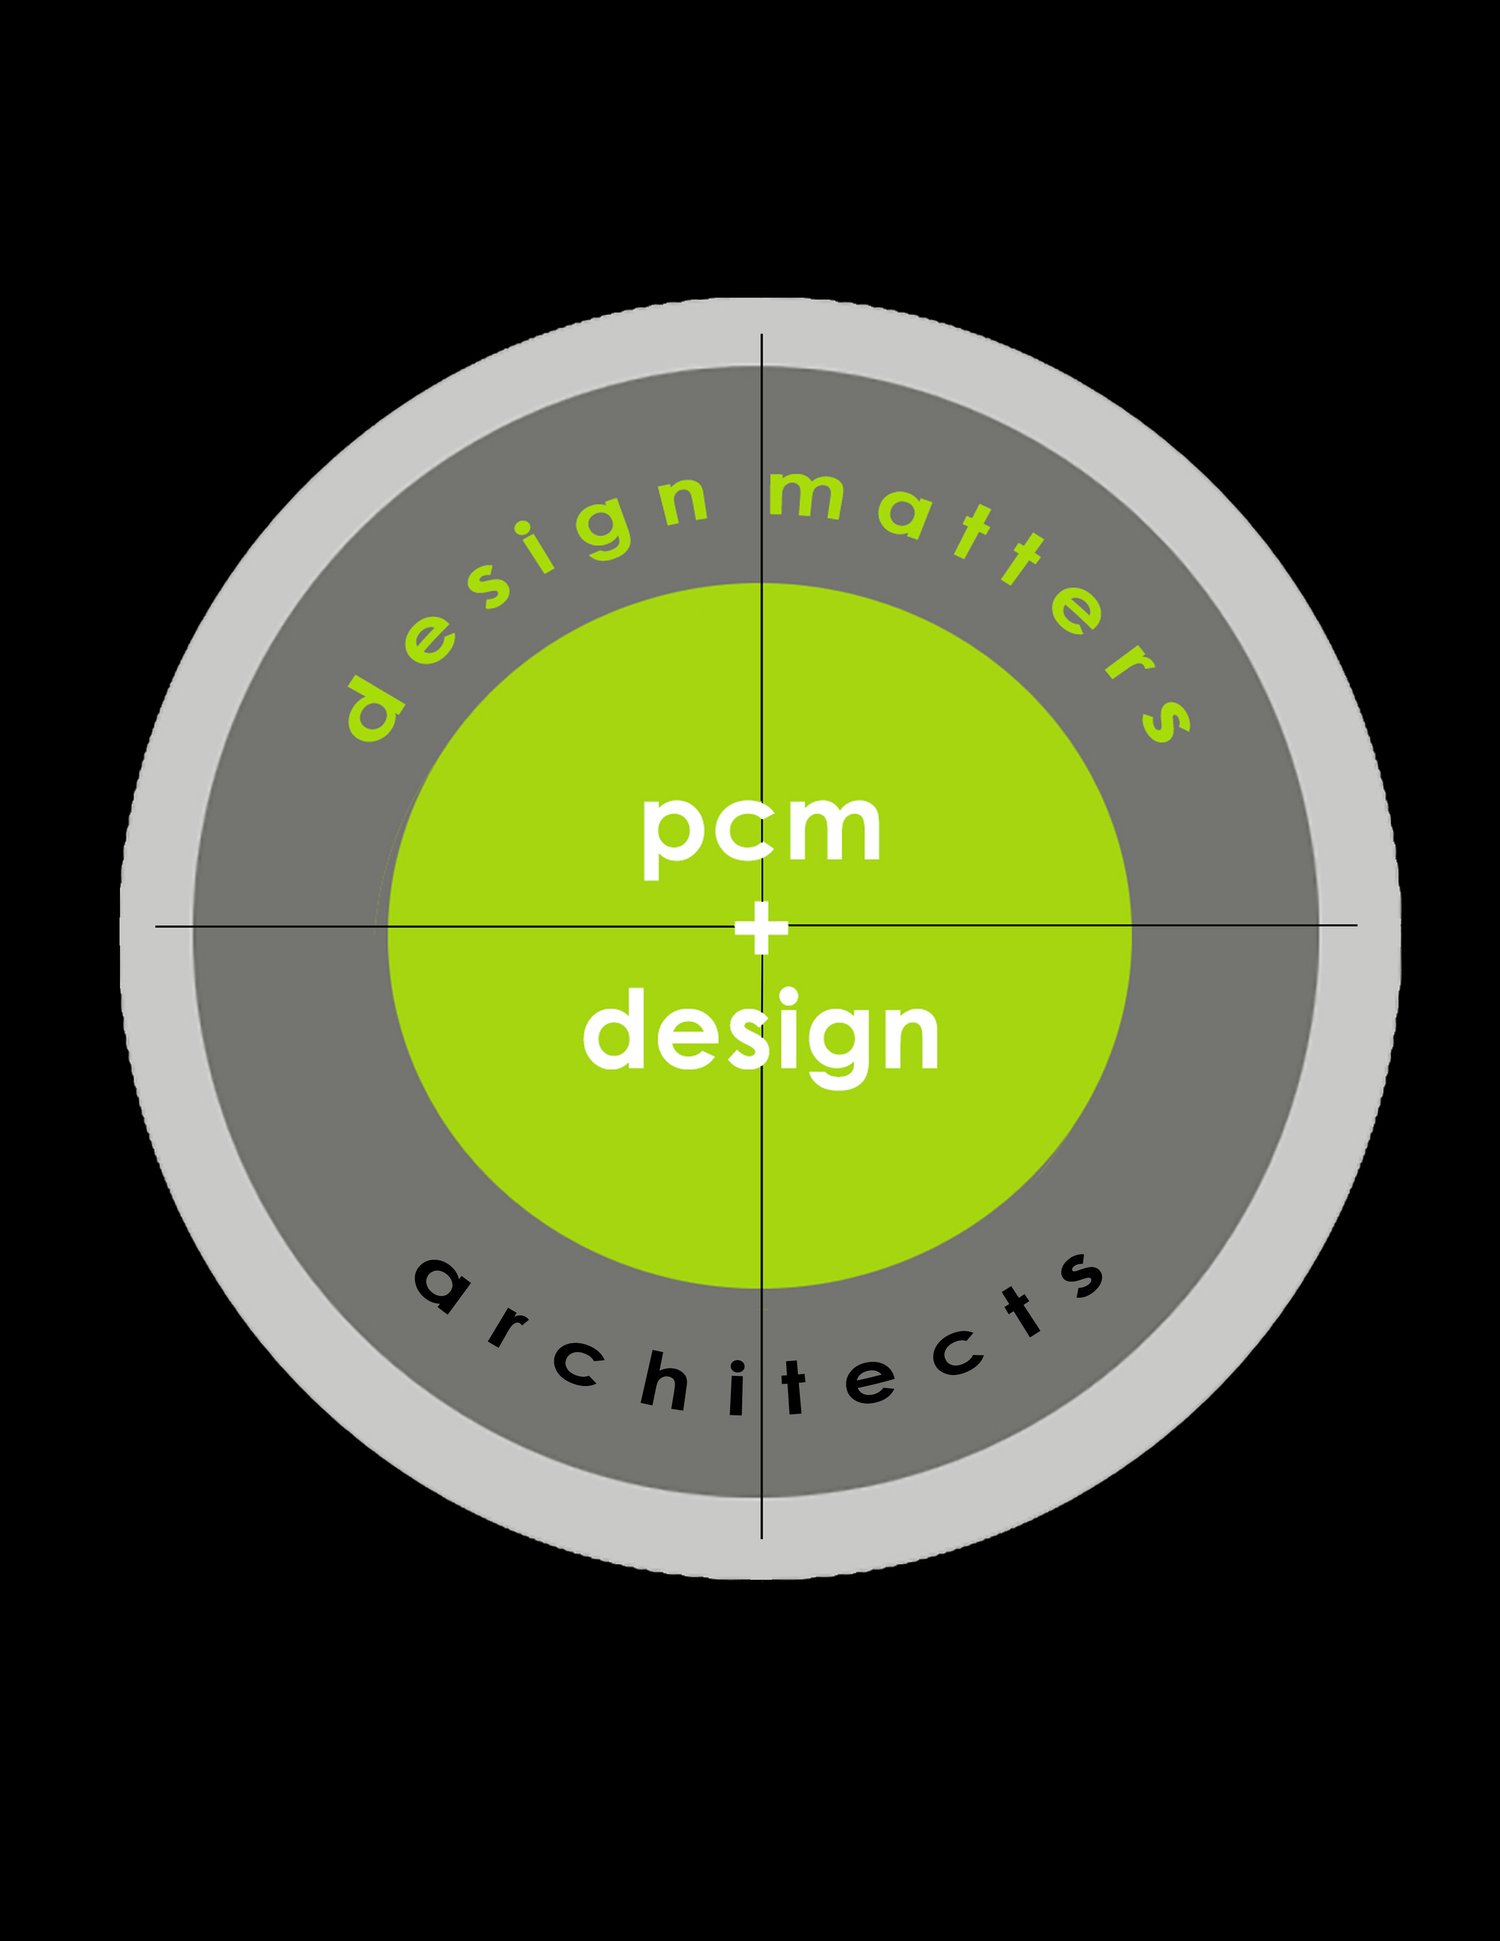 pcm + design architects